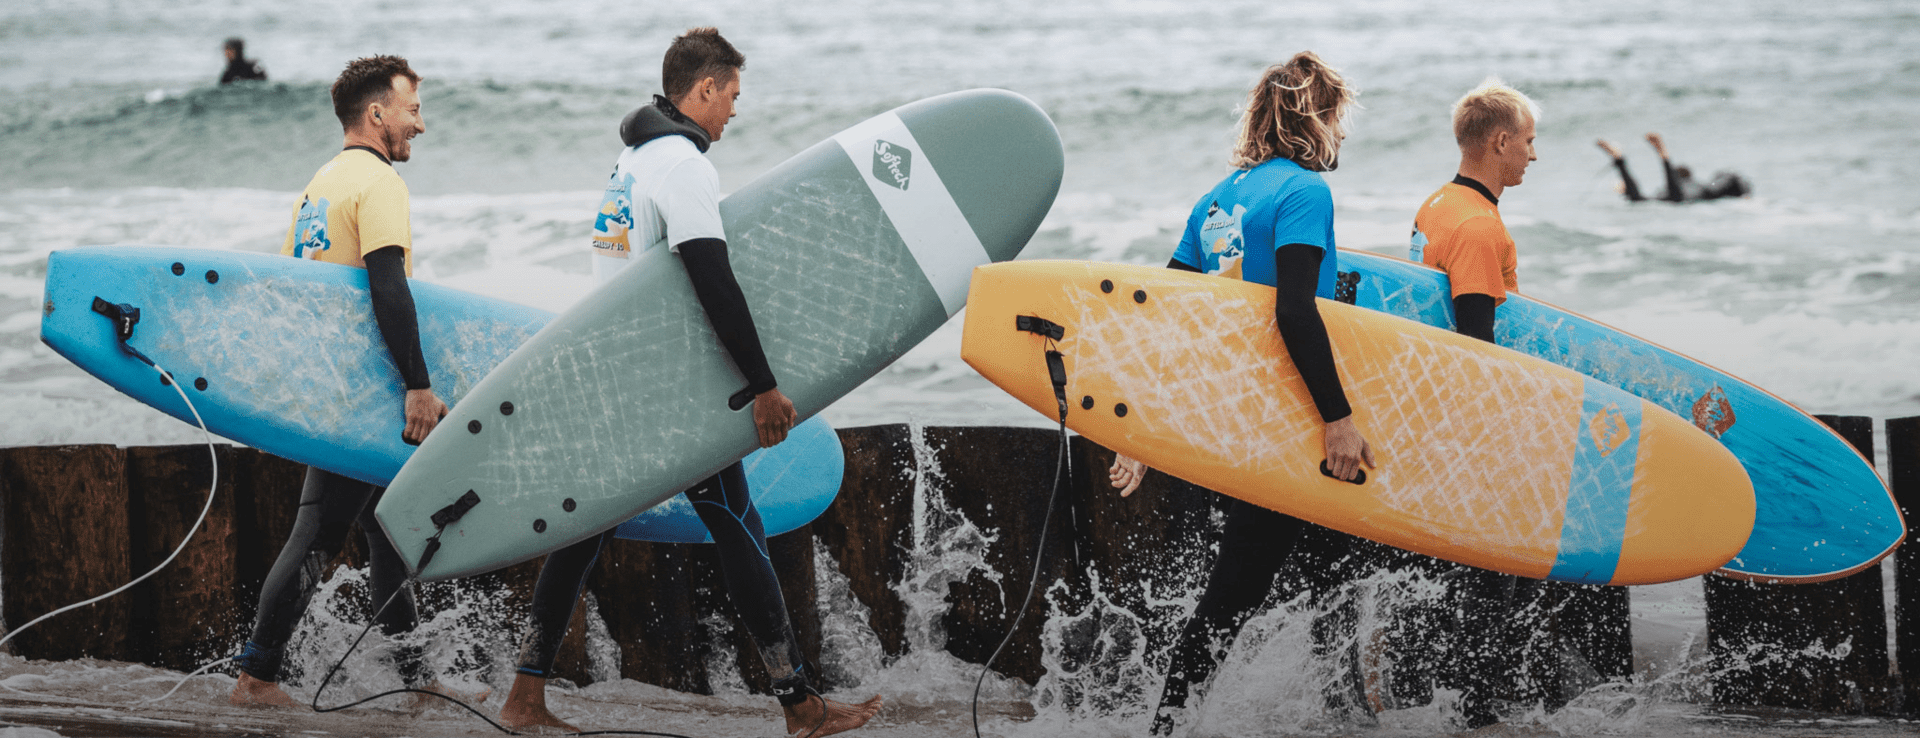 surferzy idący do wody -Wypożyczalnia desek surfingowych